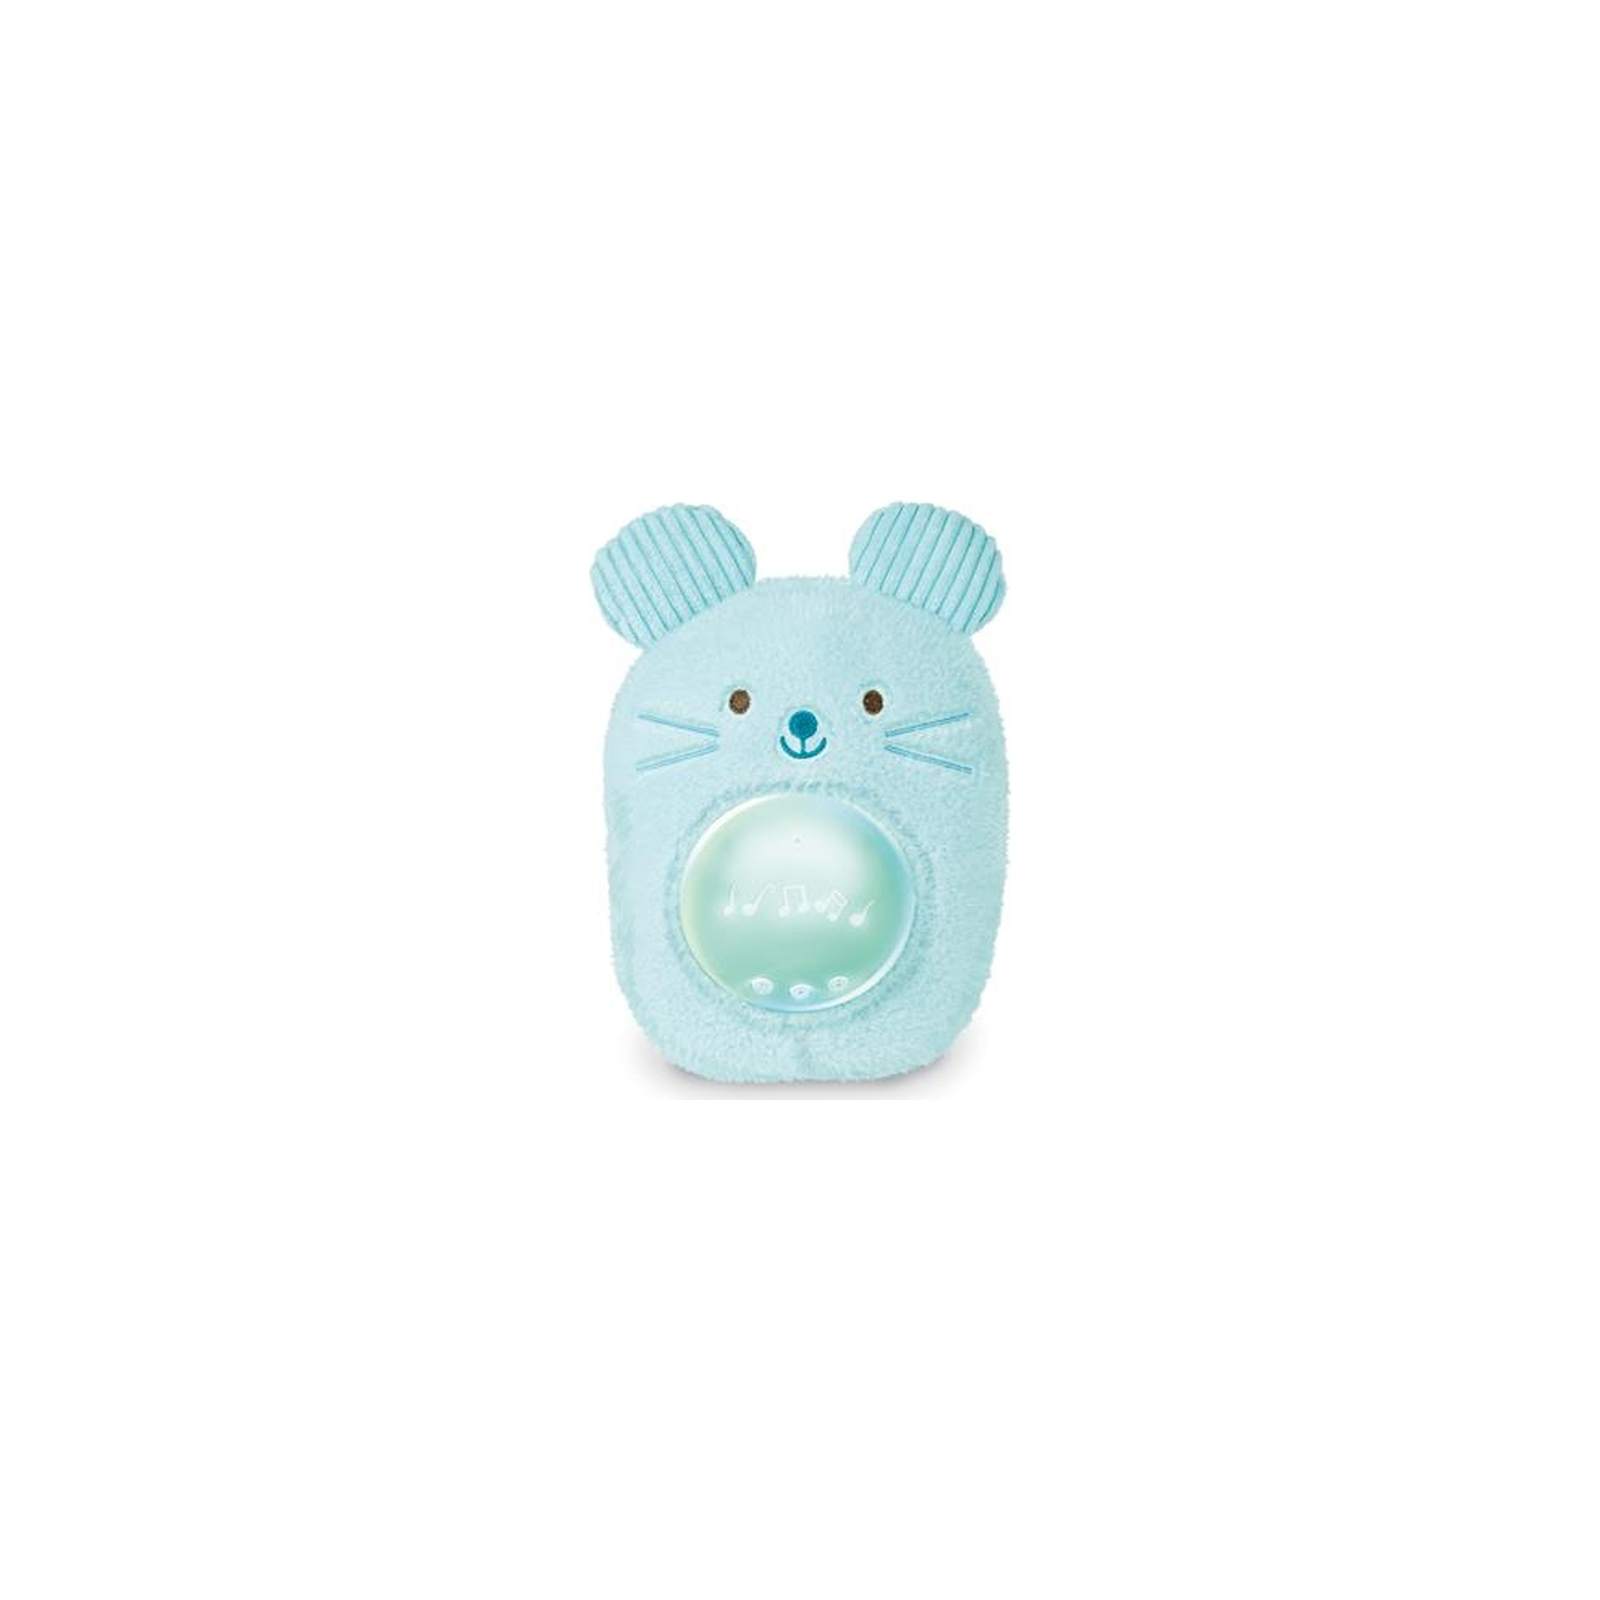 Ночник Hape Музыкальная игрушка-ночник Мышонок голубой (E0113)